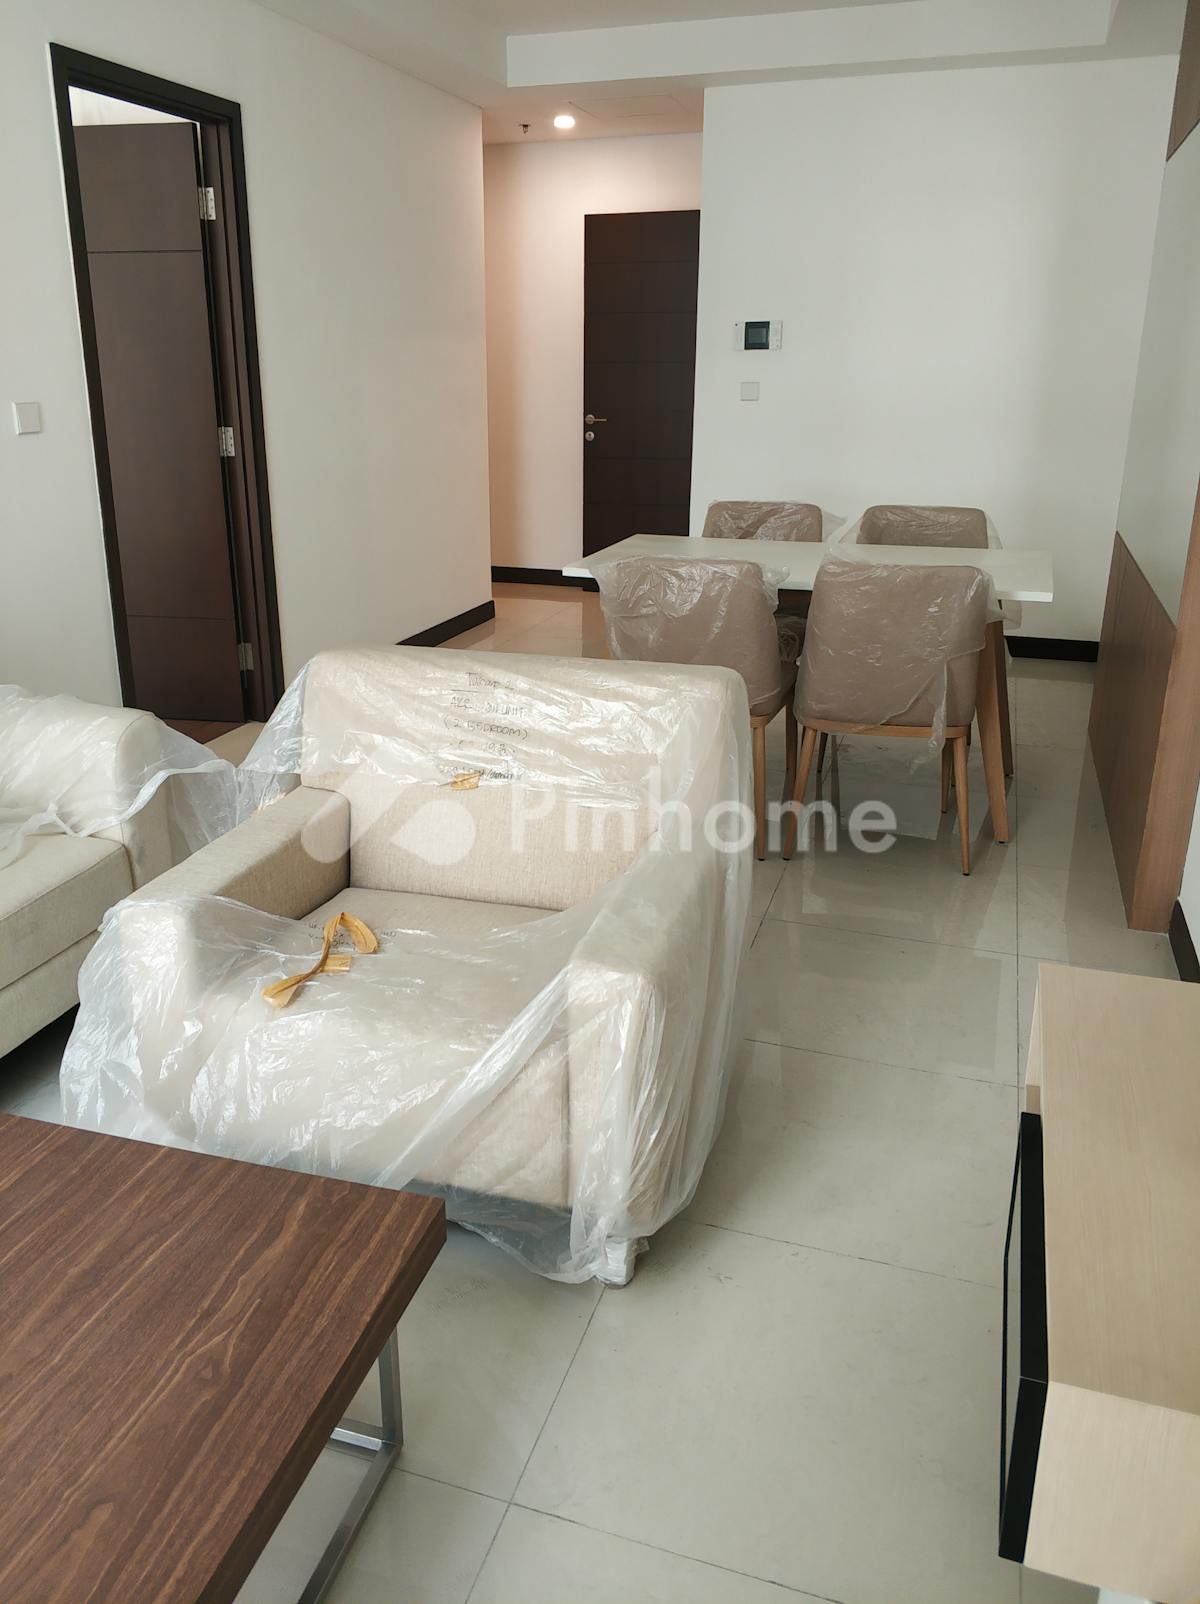 Disewakan Apartemen Siap Huni di Jl Metro Permata Utama Rt/rw 001/002 - Gambar 1